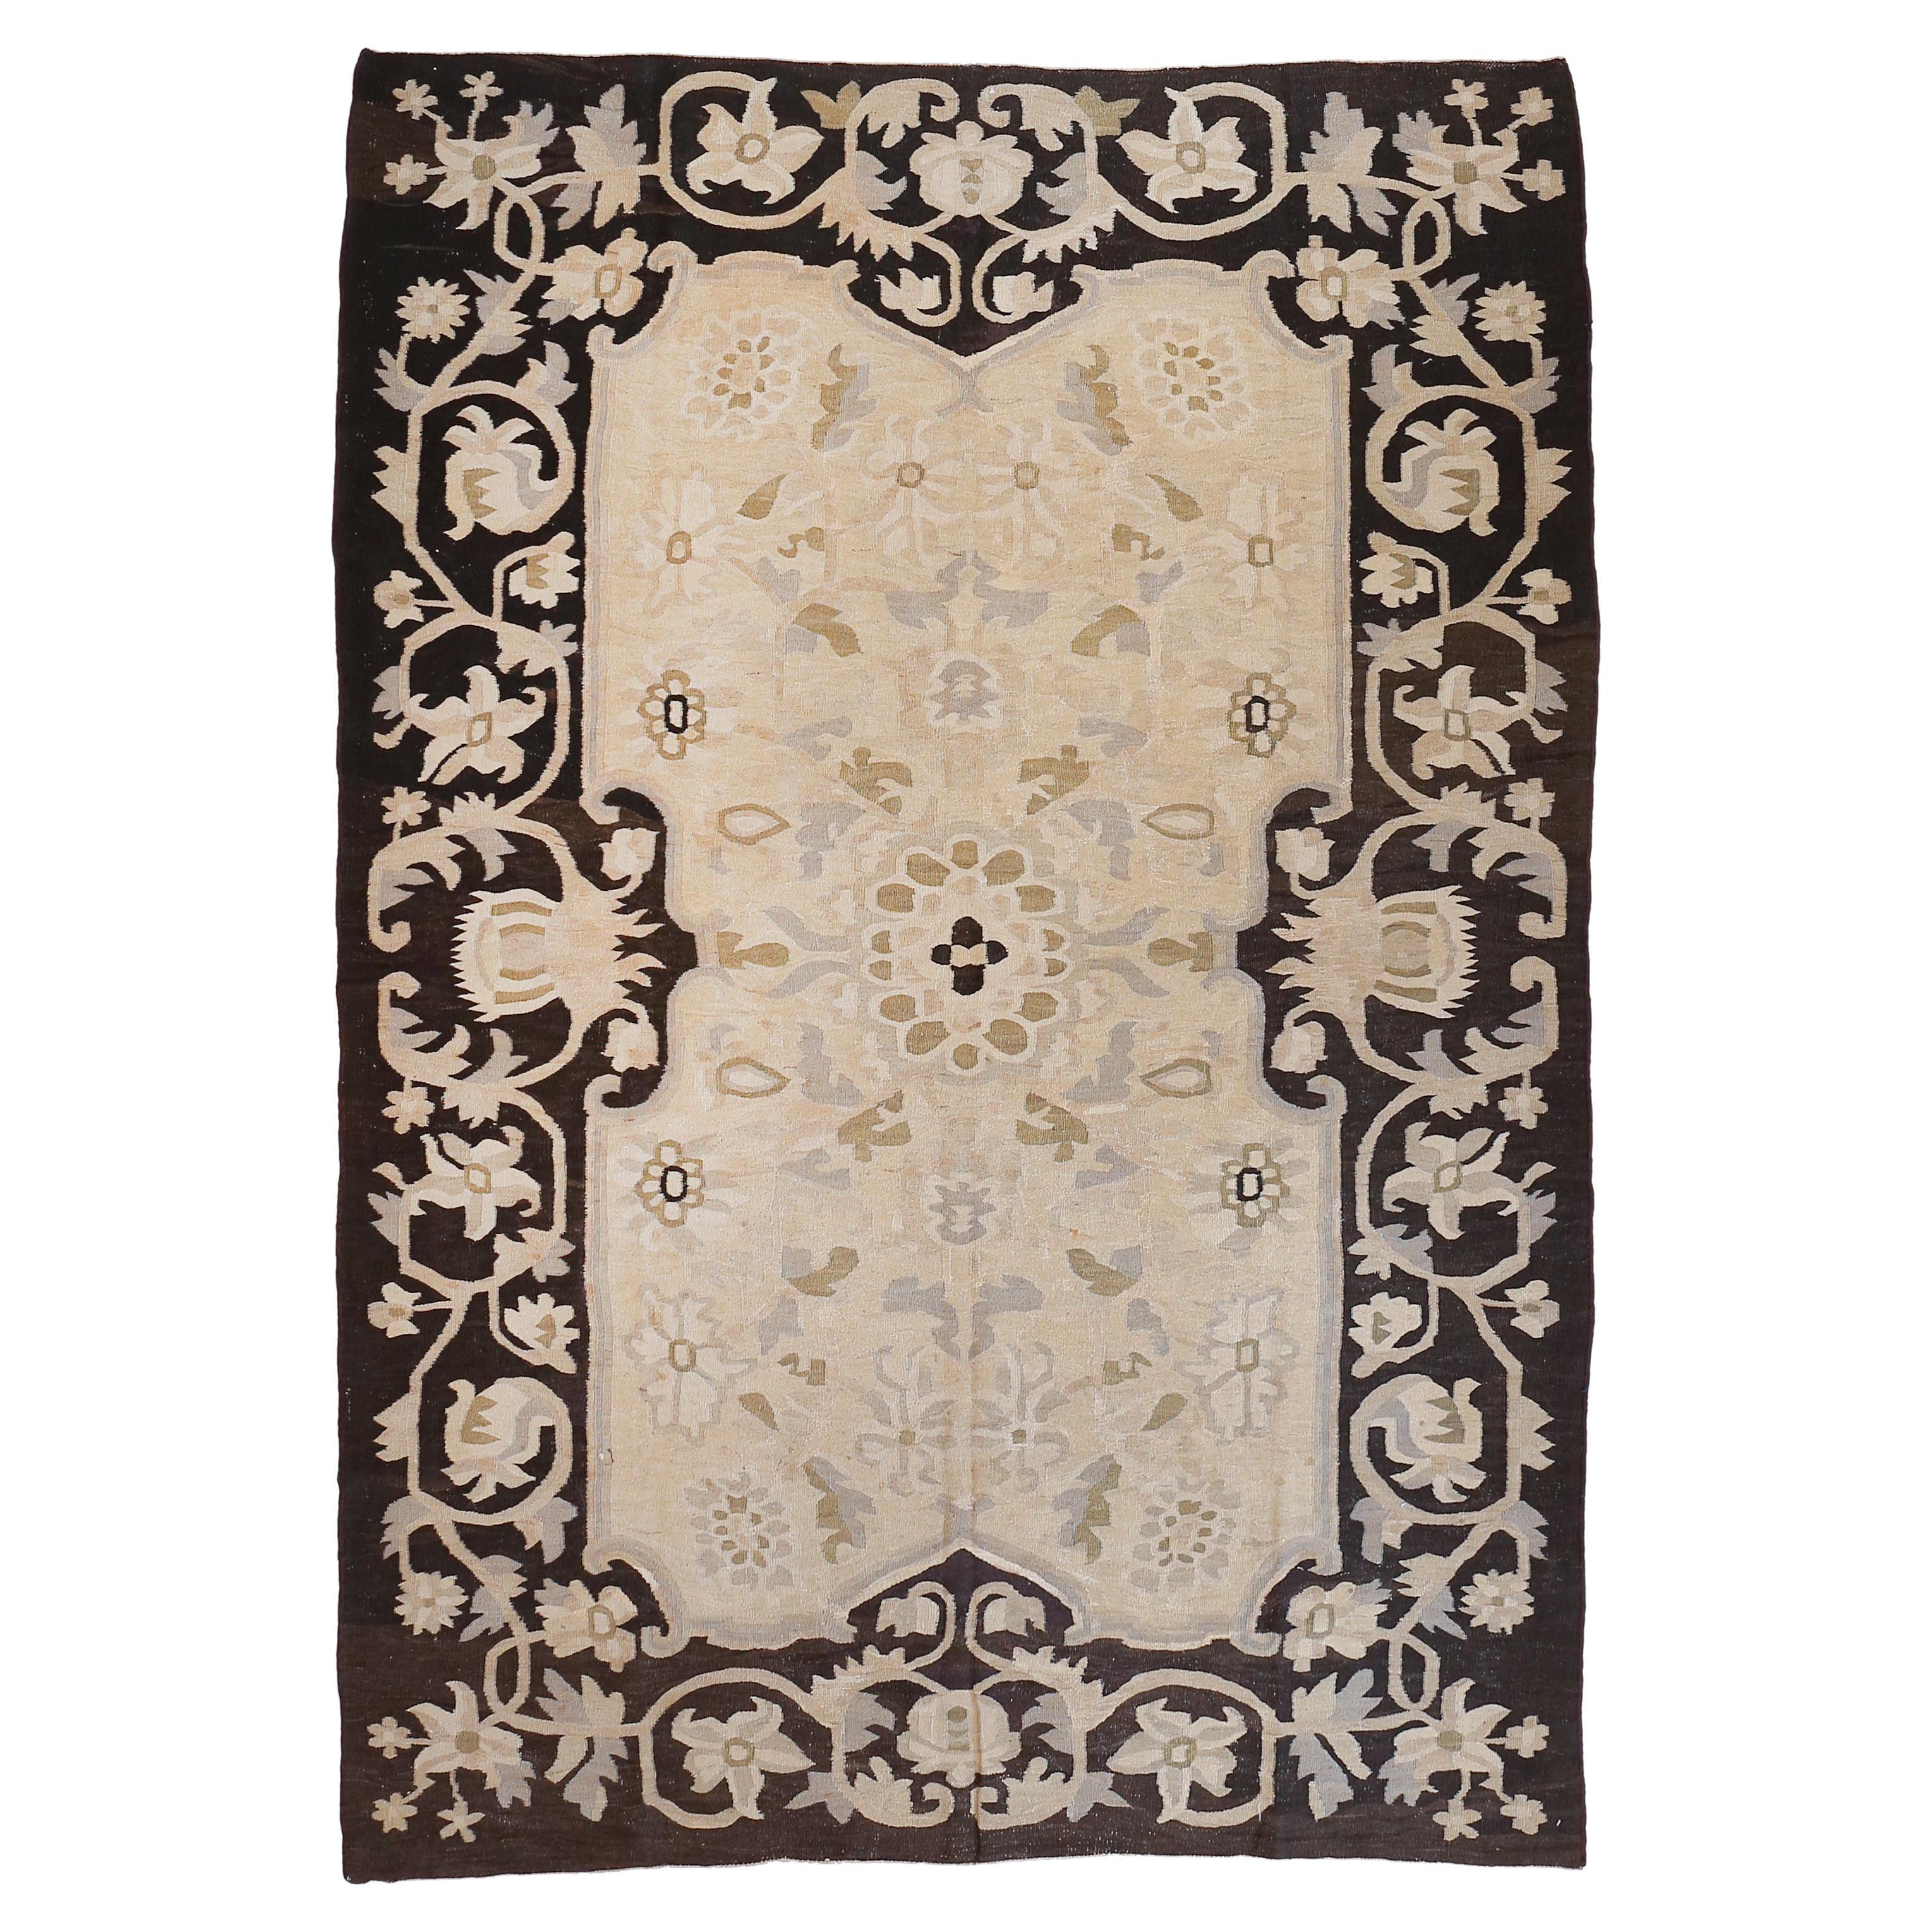 Antique tapis Kilim Bessarabian à fond beige avec bordure noire